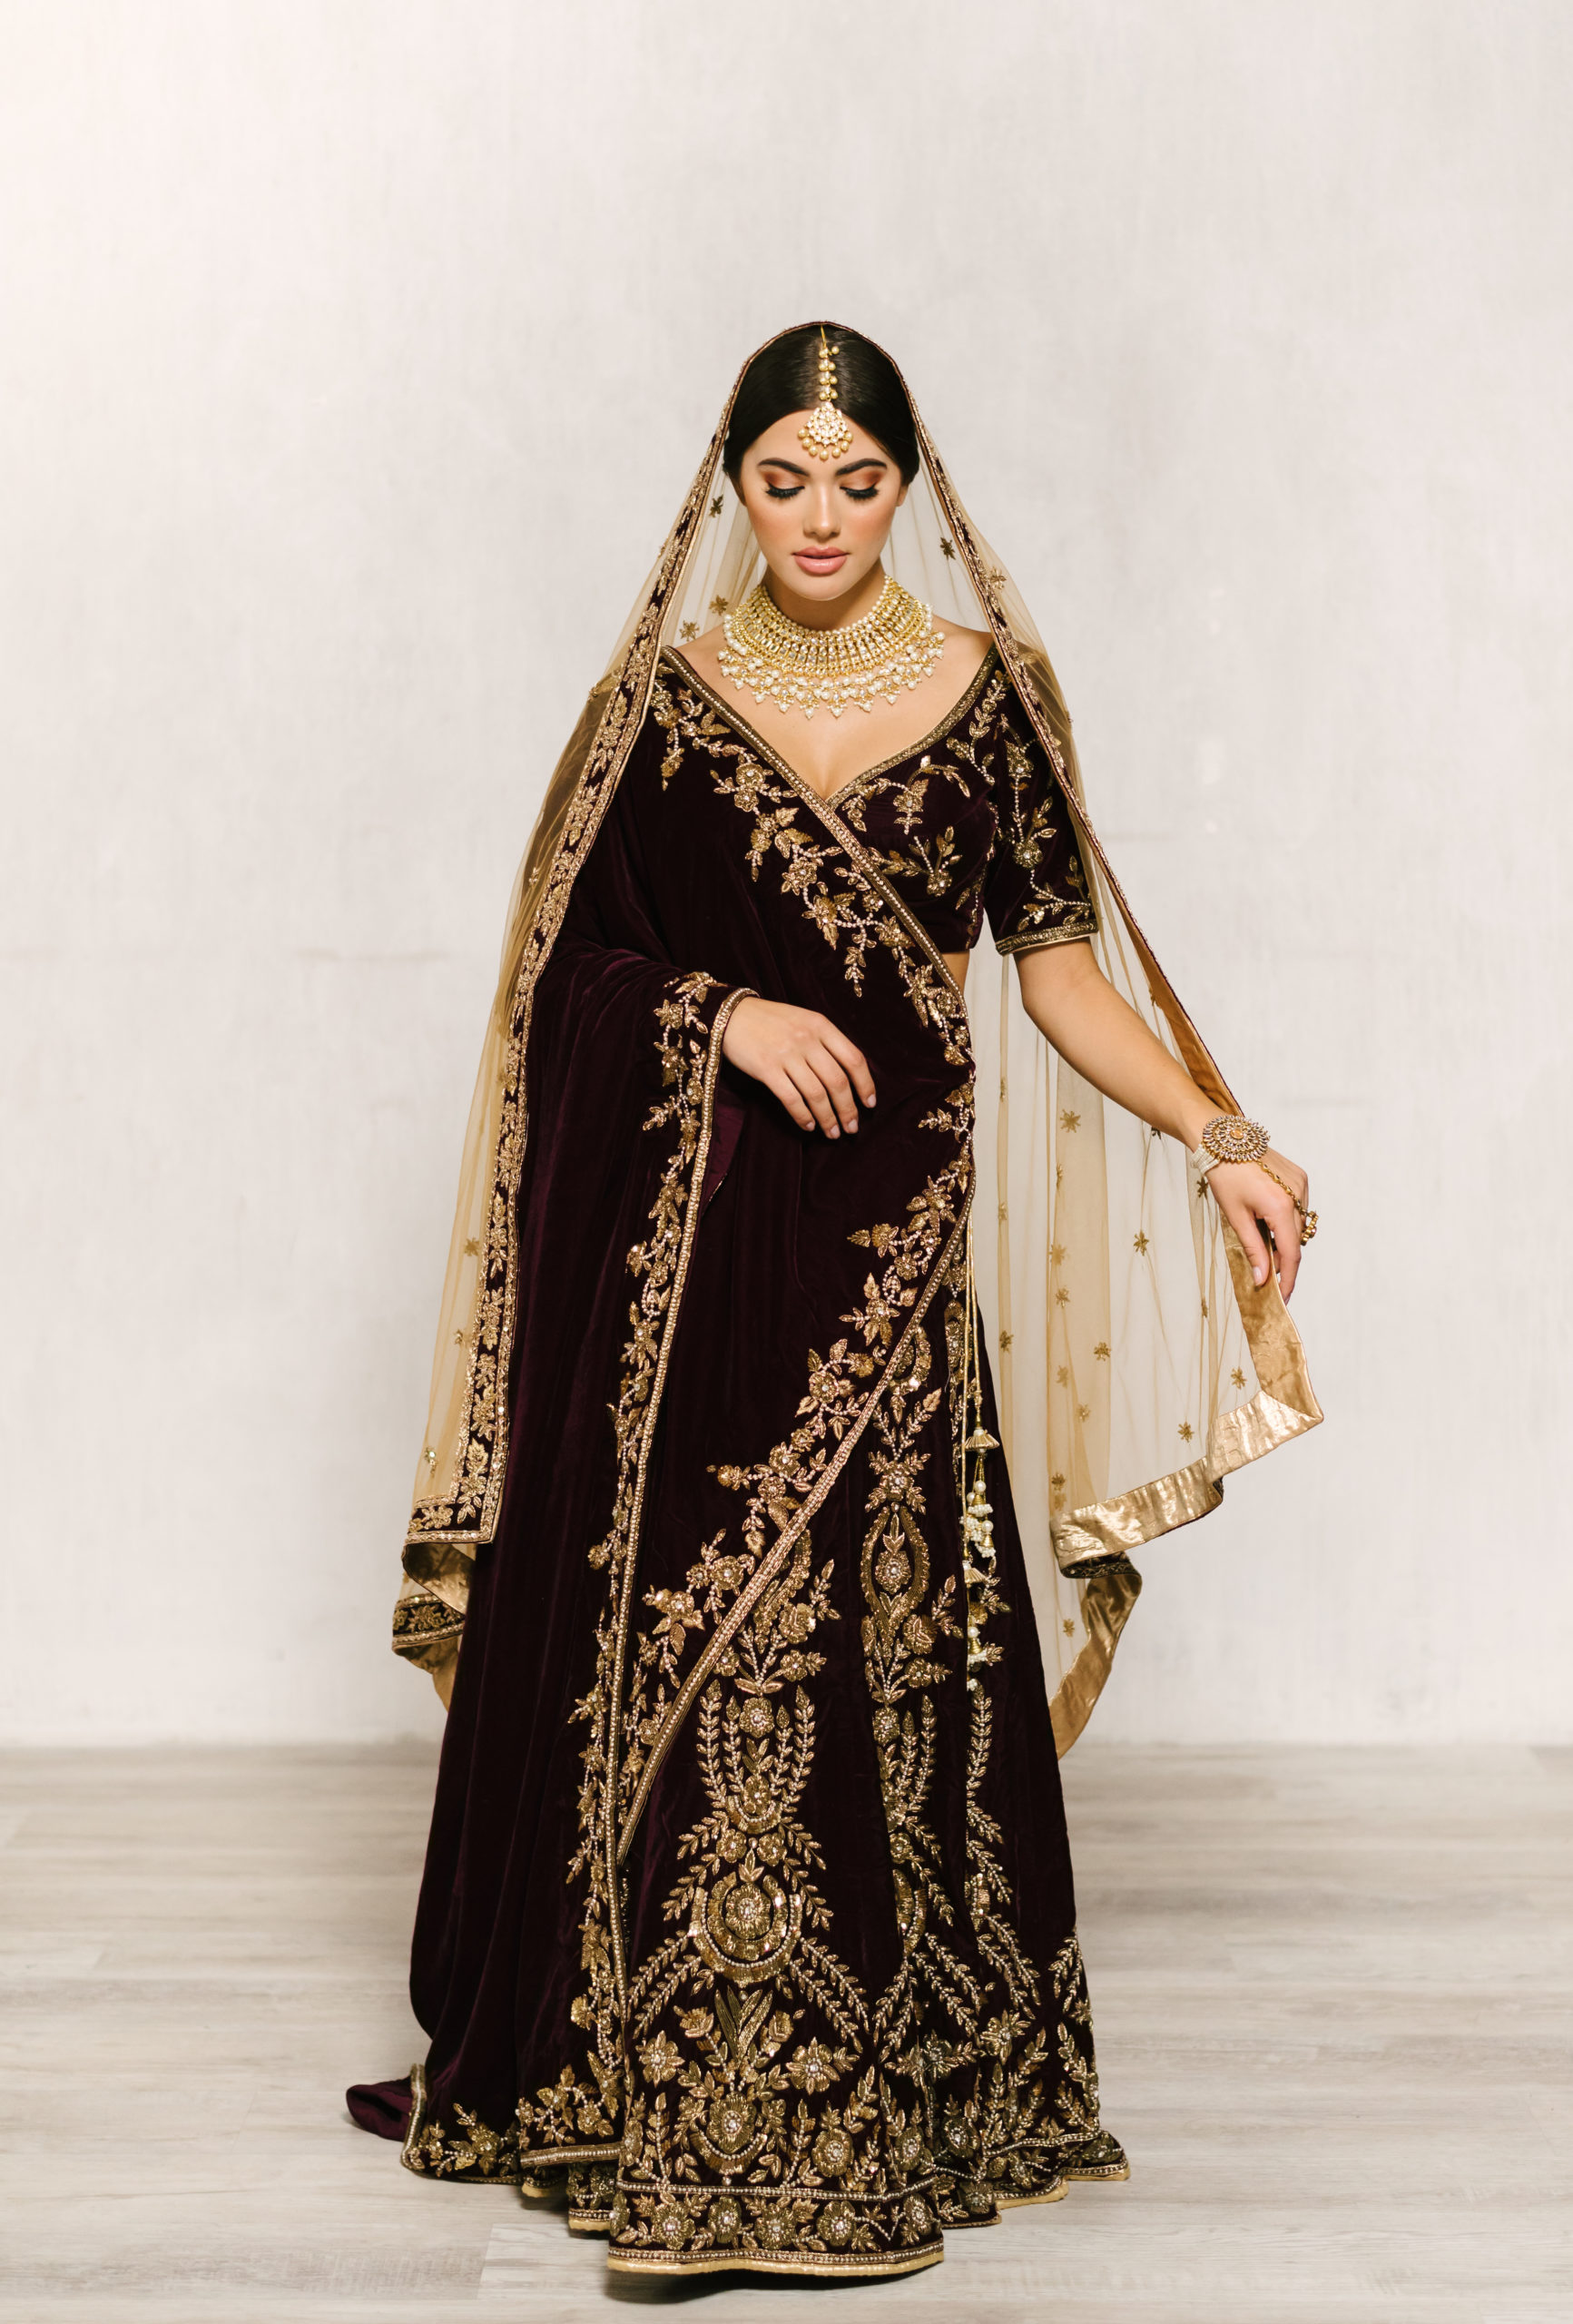 INXVIII - Indian Wedding Fashion - Zardozi Magazine - Indian Weddings